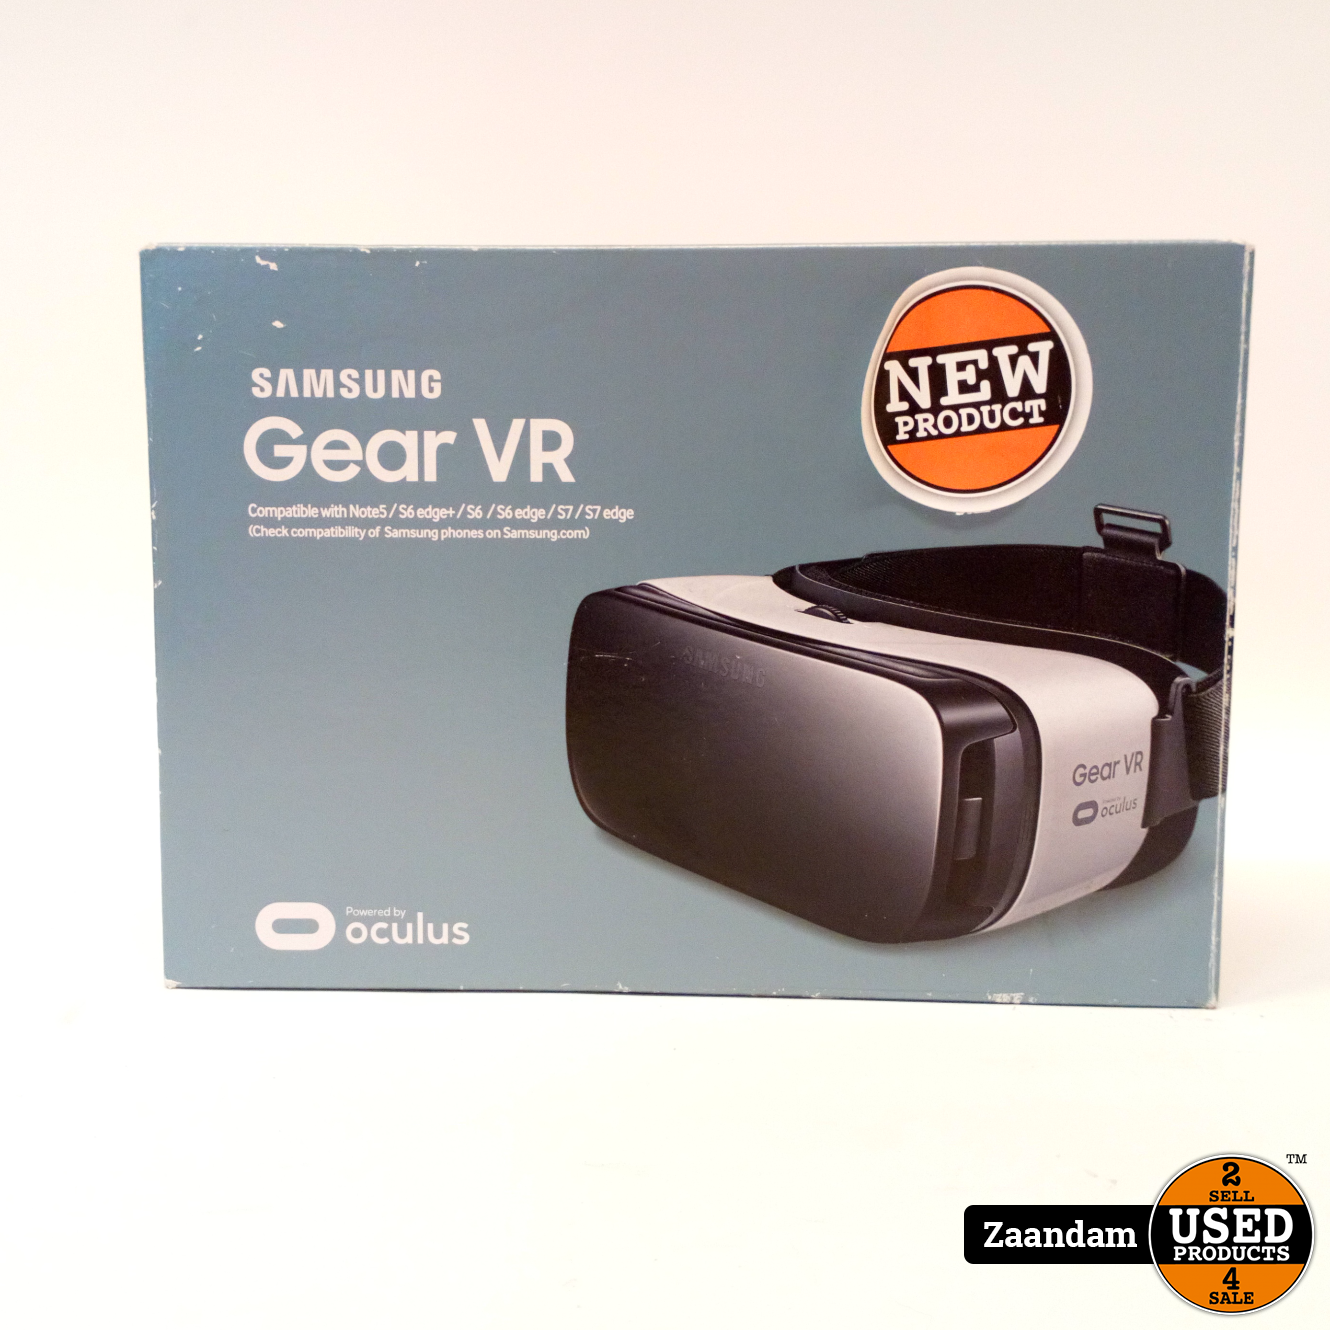 Observatorium huiselijk Keel Samsung Galaxy Gear VR Note5/S6/S7 | Nieuw in doos - Used Products Zaandam